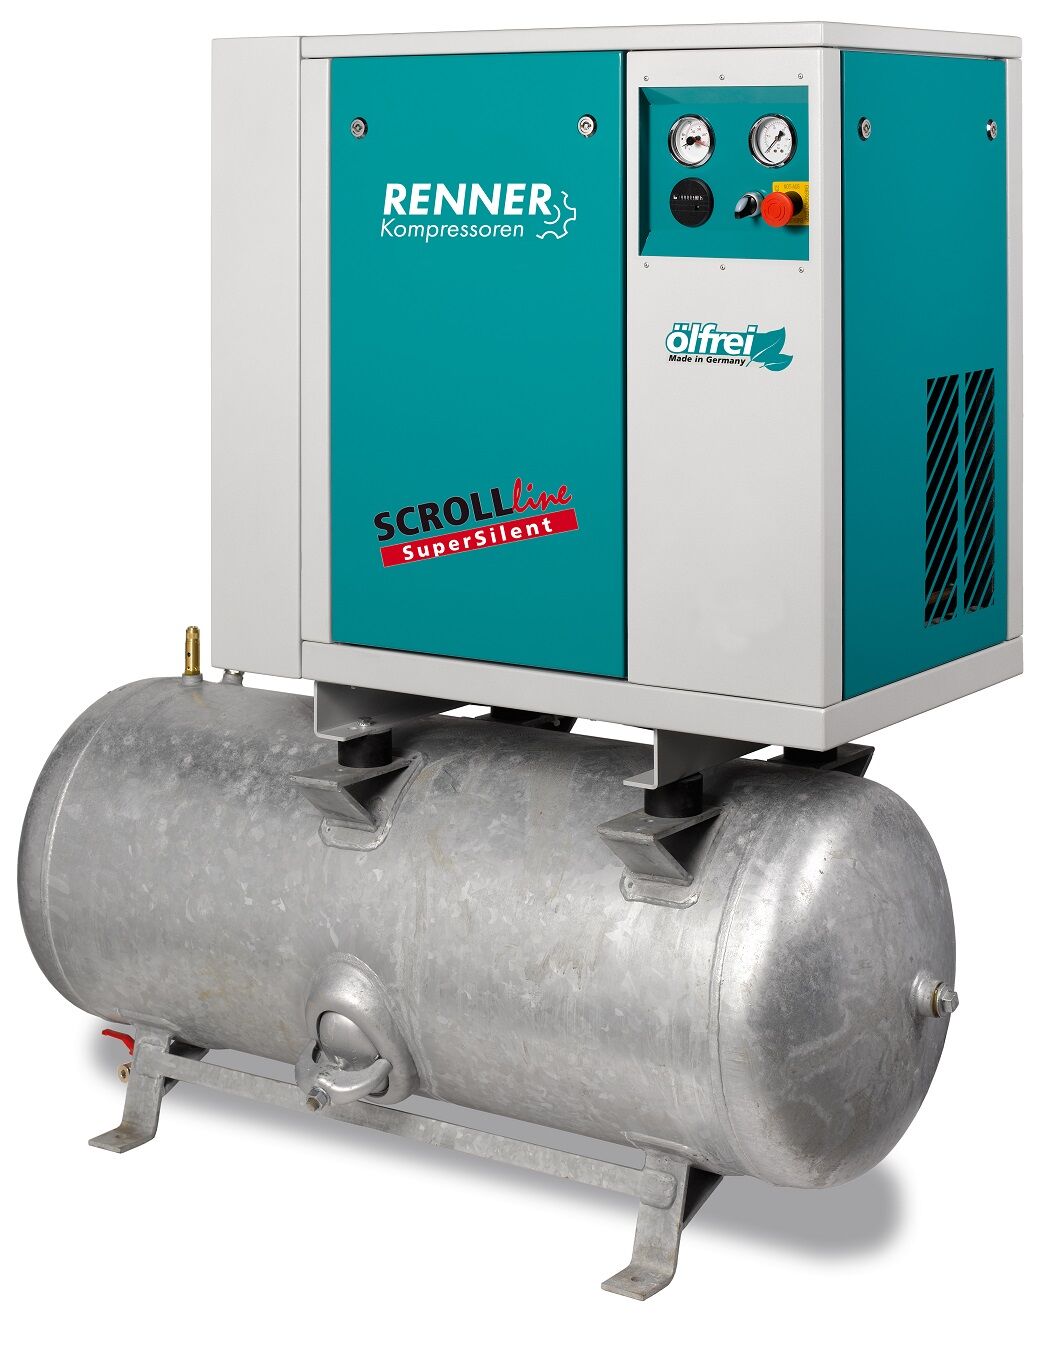 RENNER-Kompressor SLD-S 7,5 auf 250 Liter Druckbehälter - SuperSilent ölfreier Scrollkompressor